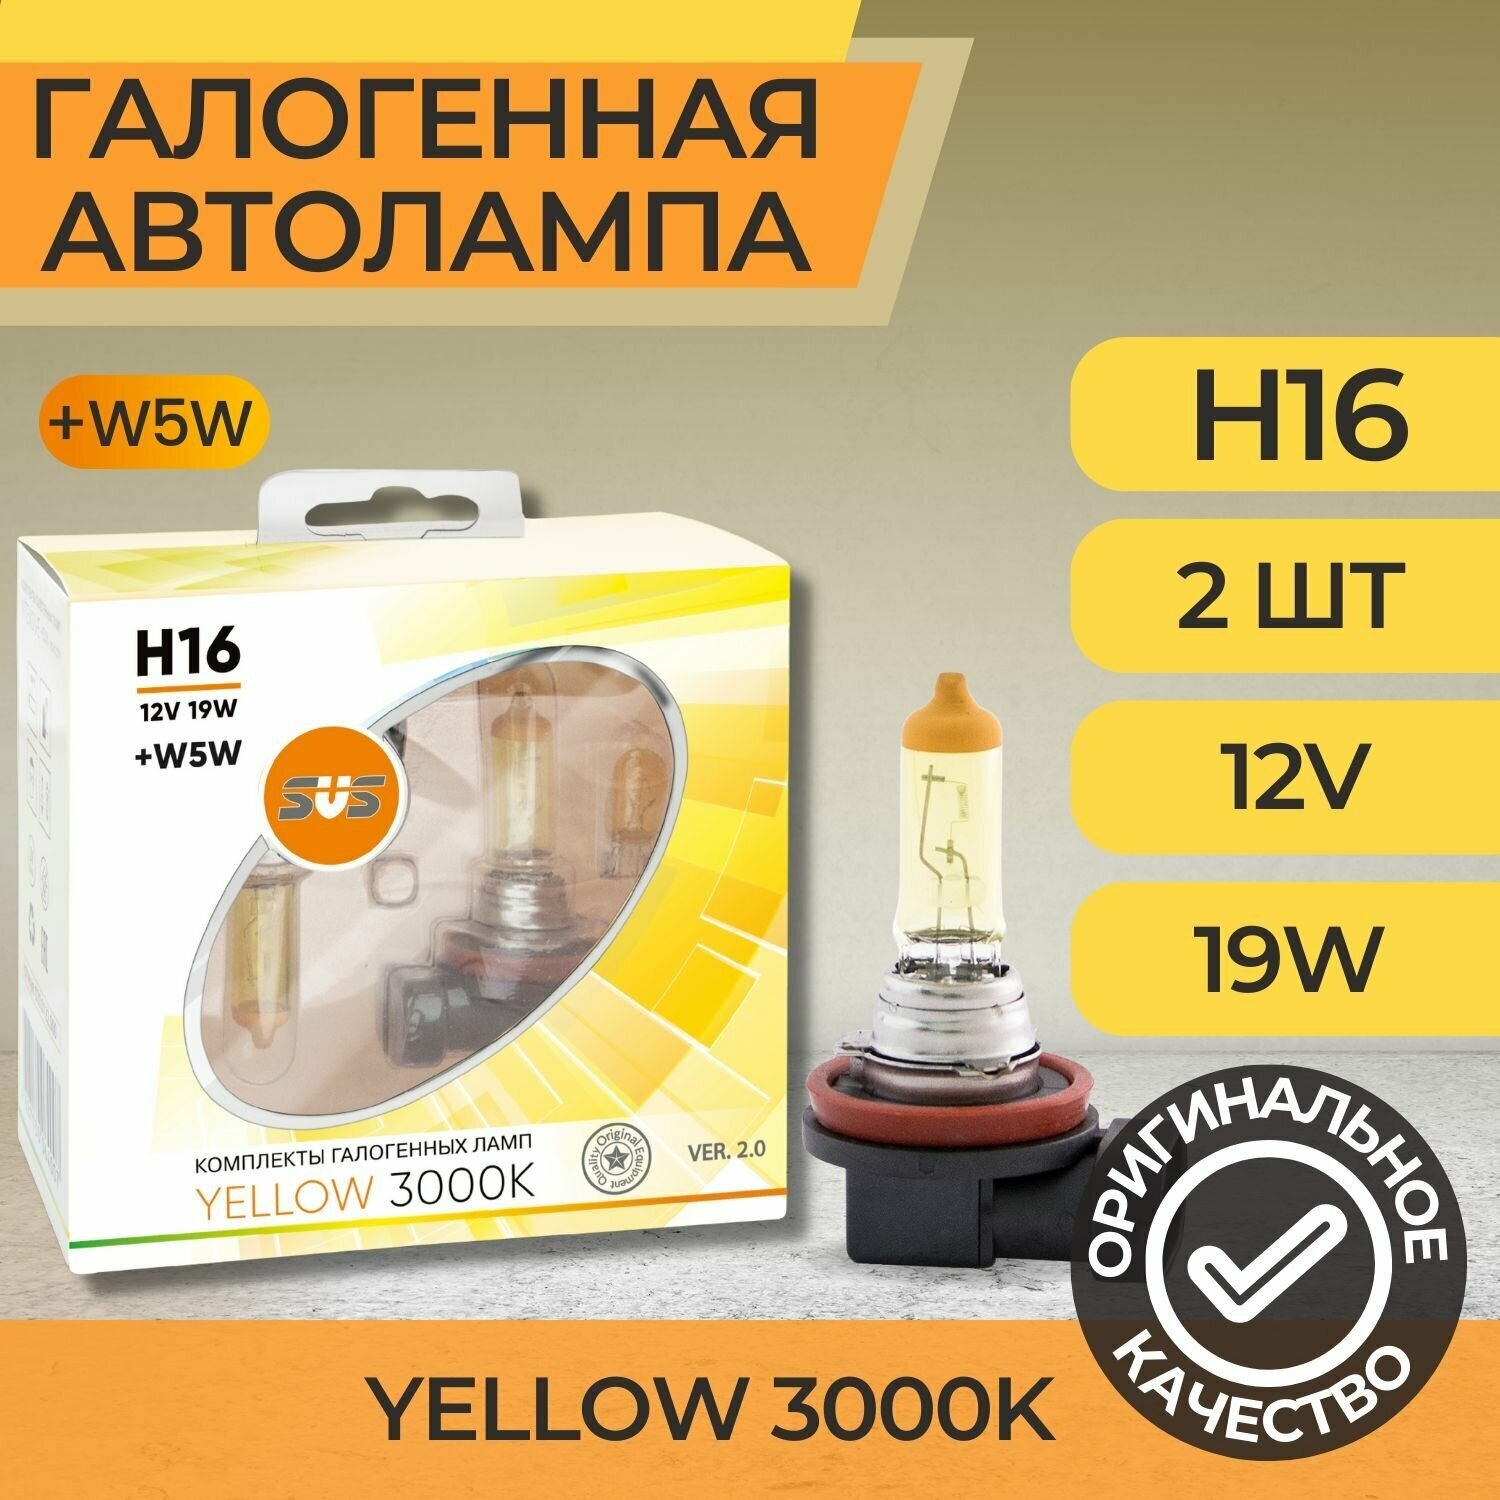 Галогенная лампа SVS Yellow 3000K H16 12V 19W Ver.2.0 (2 шт) - фото №2